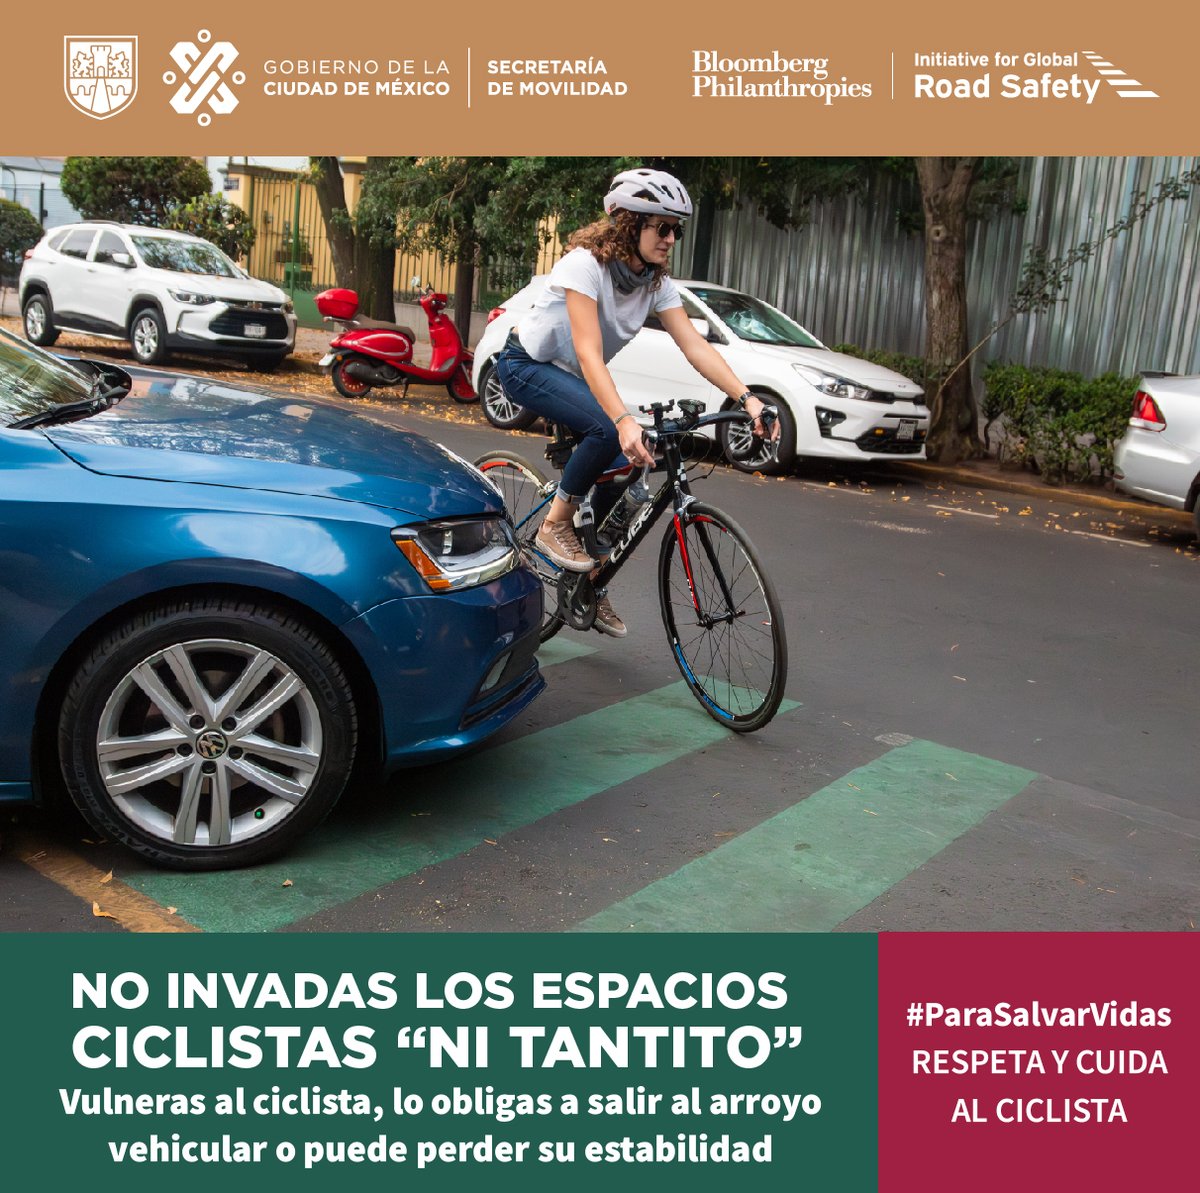 Automovilista 🚗🚚, no invadas los espacios ciclistas, ni tantito 🤏 Respeta los lugares destinados a los diferentes modos de transporte y #CuidaAlCiclista 🤓